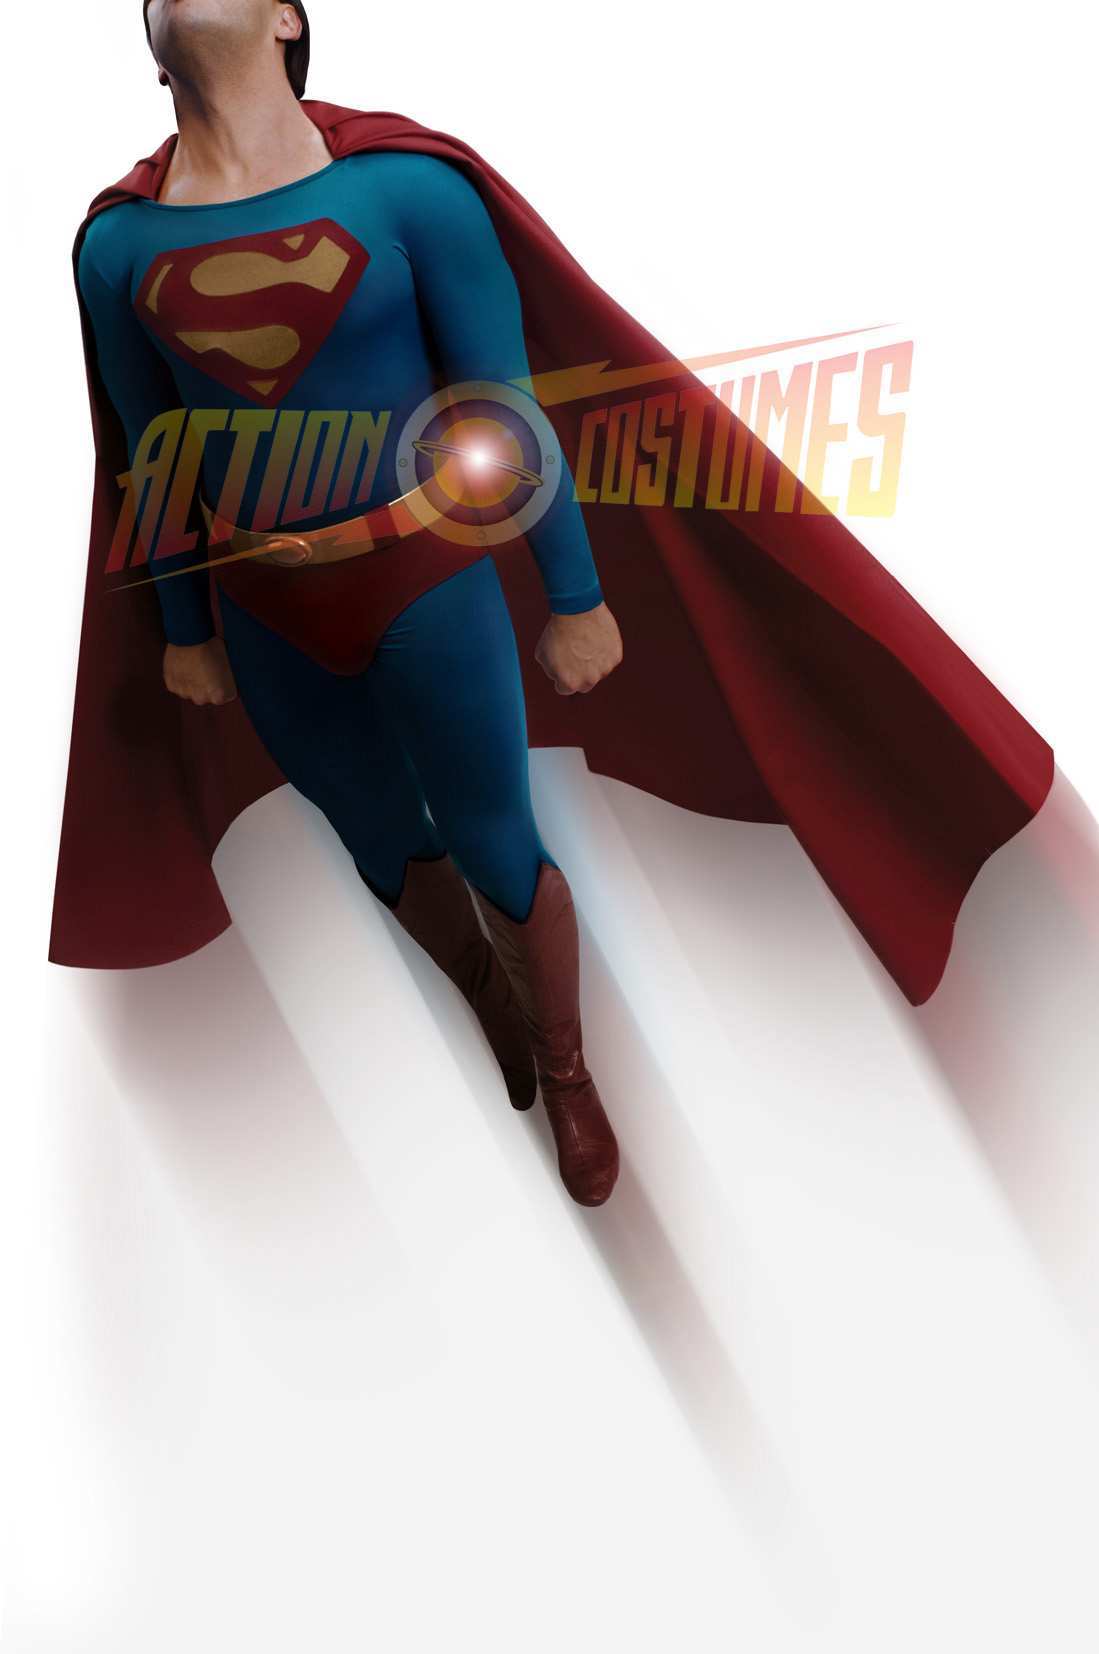 SUPERMAN BY SEBASTIAN COLOMBO